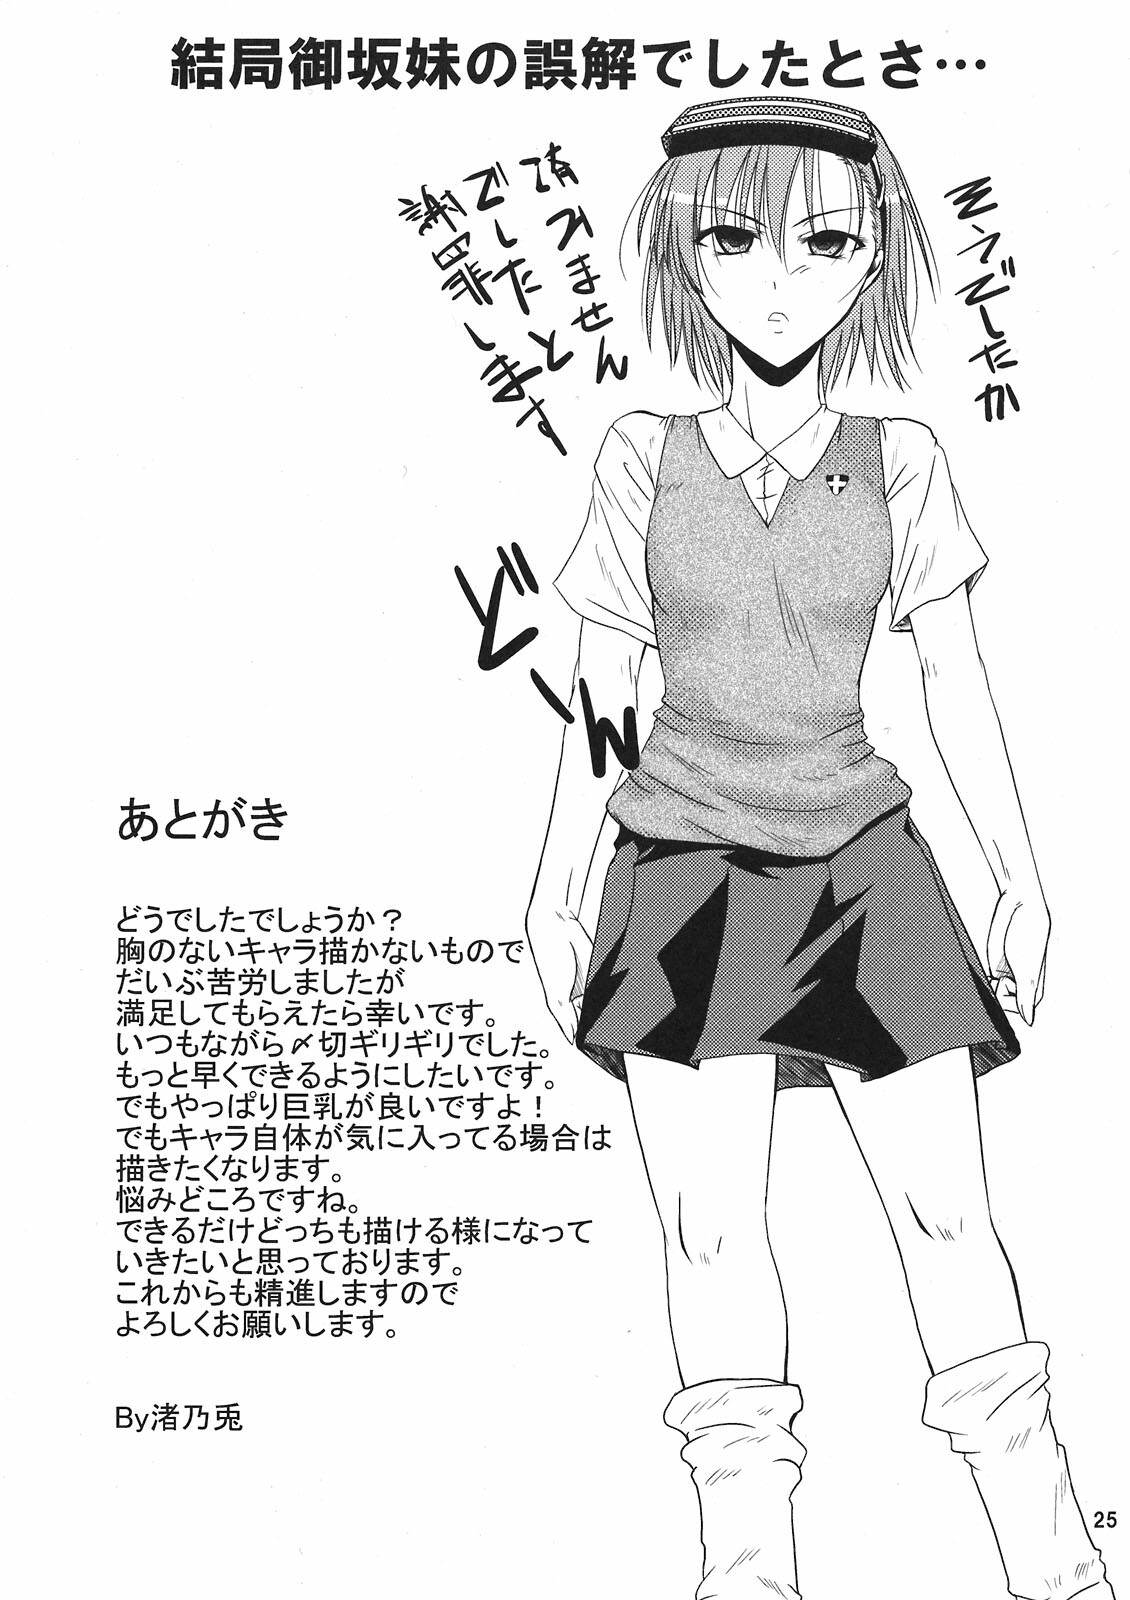 (SC42) [Gift (Nagisano Usagi)] Chome Chomeri (Toaru Majutsu no Index) page 25 full